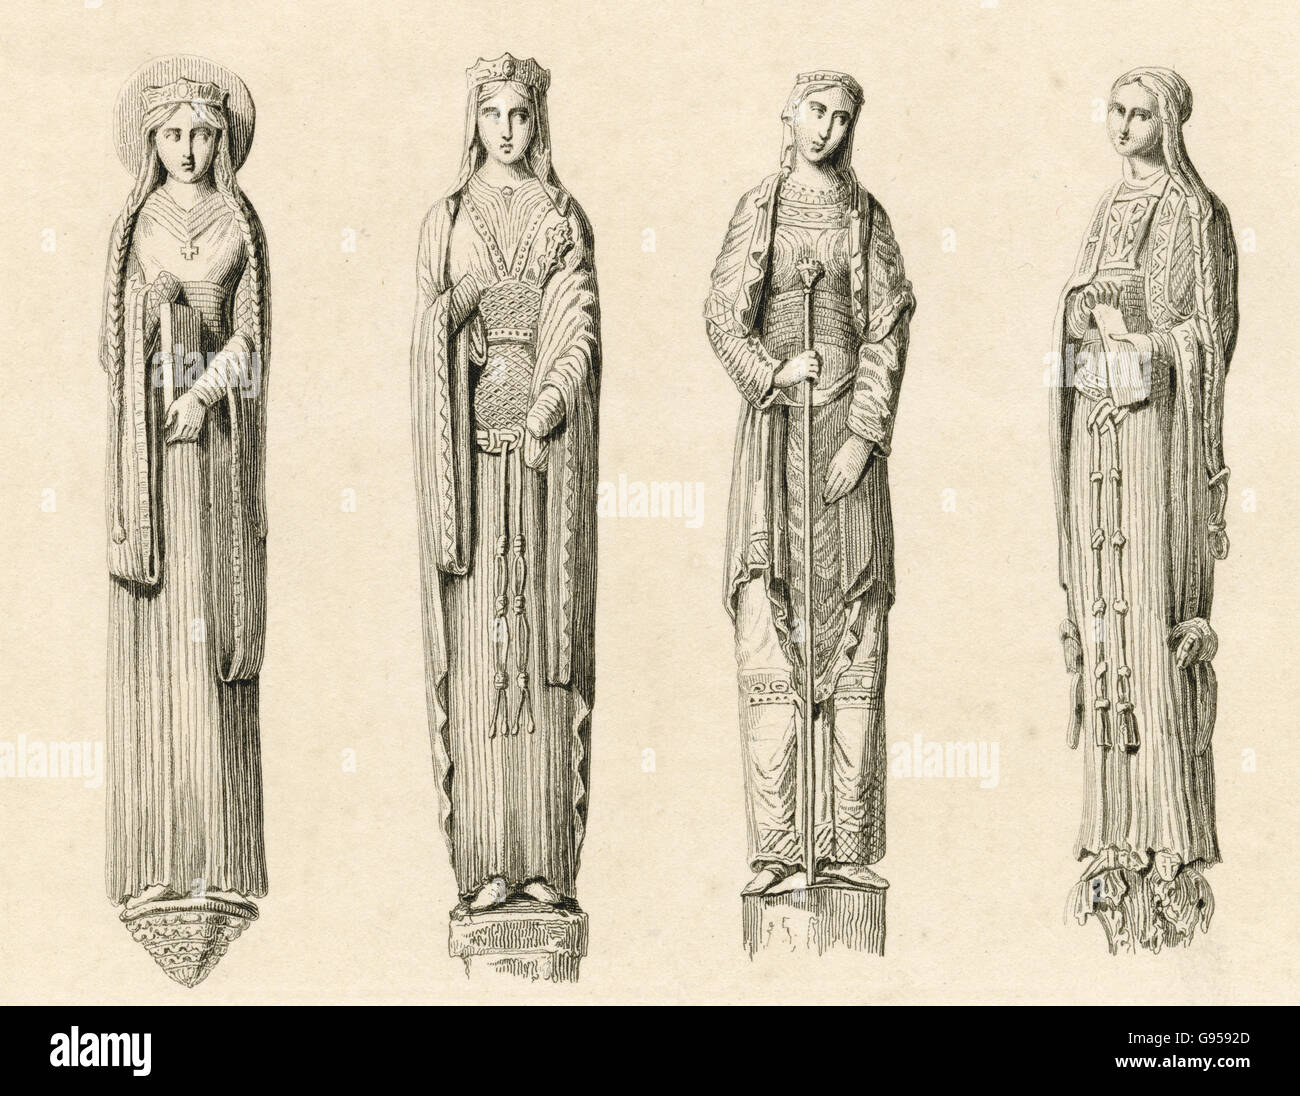 Incisione di antiquariato, circa 1880, di statue raffiguranti il XIII secolo figure di regine e principesse presso la cattedrale di Chartres. Fonte: incisione originale. Foto Stock